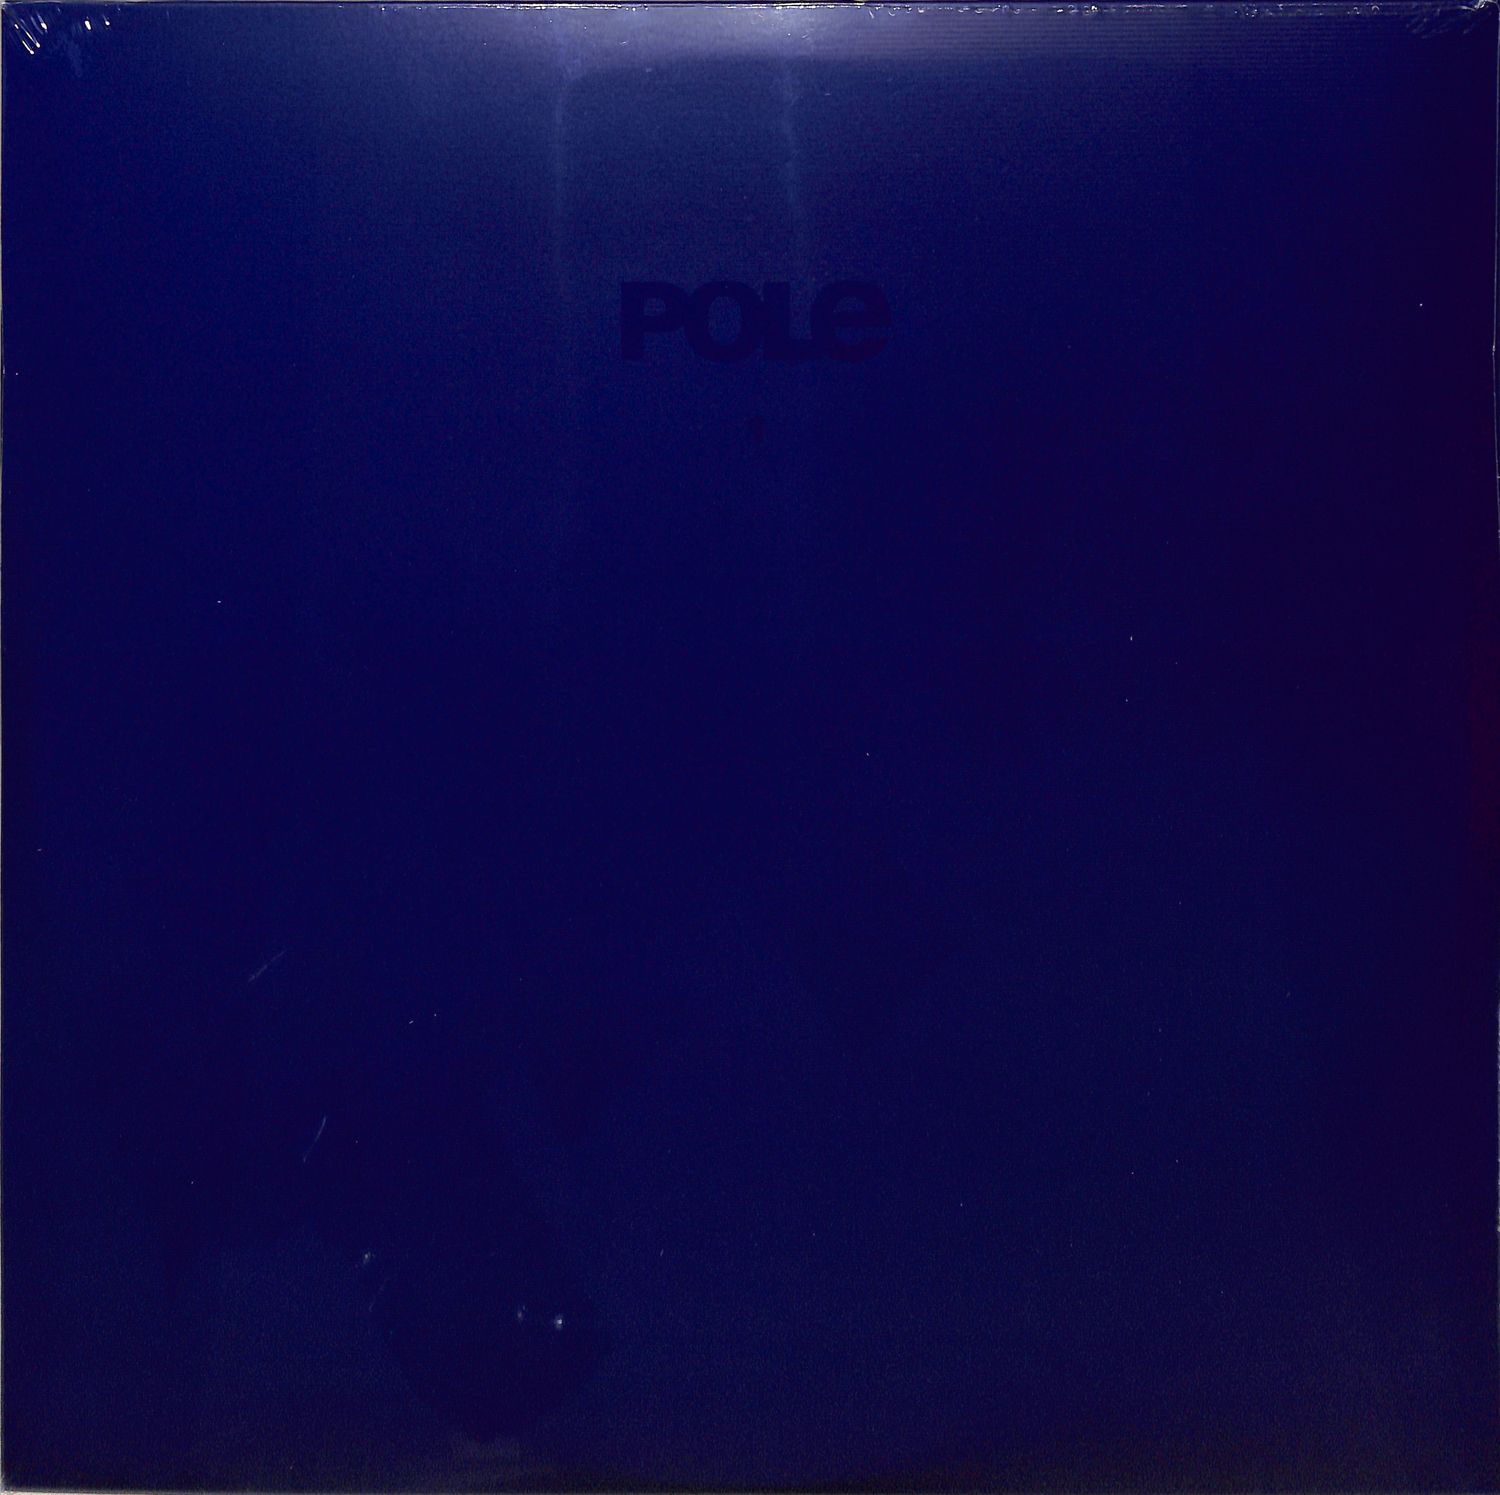 Pole - POLE1 